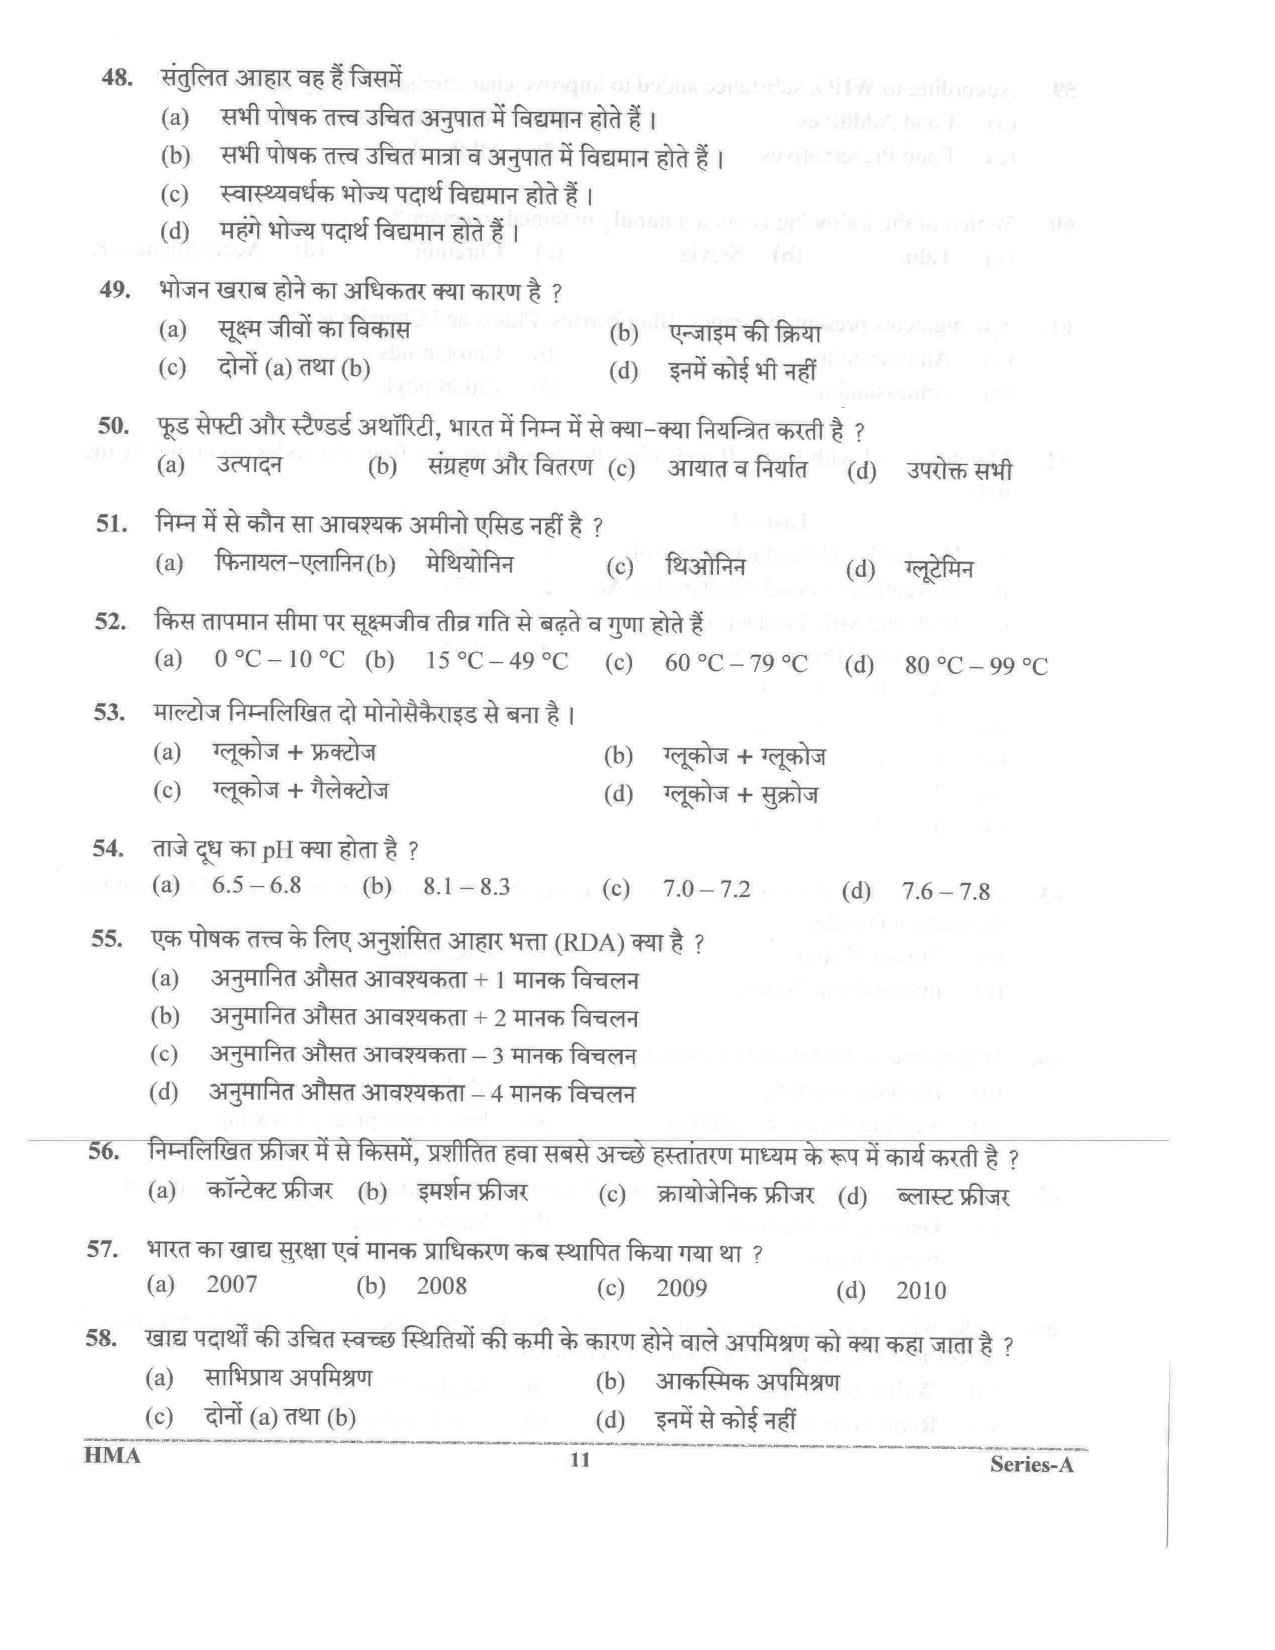 UKPSC Vyawasthapak Examination Question Paper 2021 10